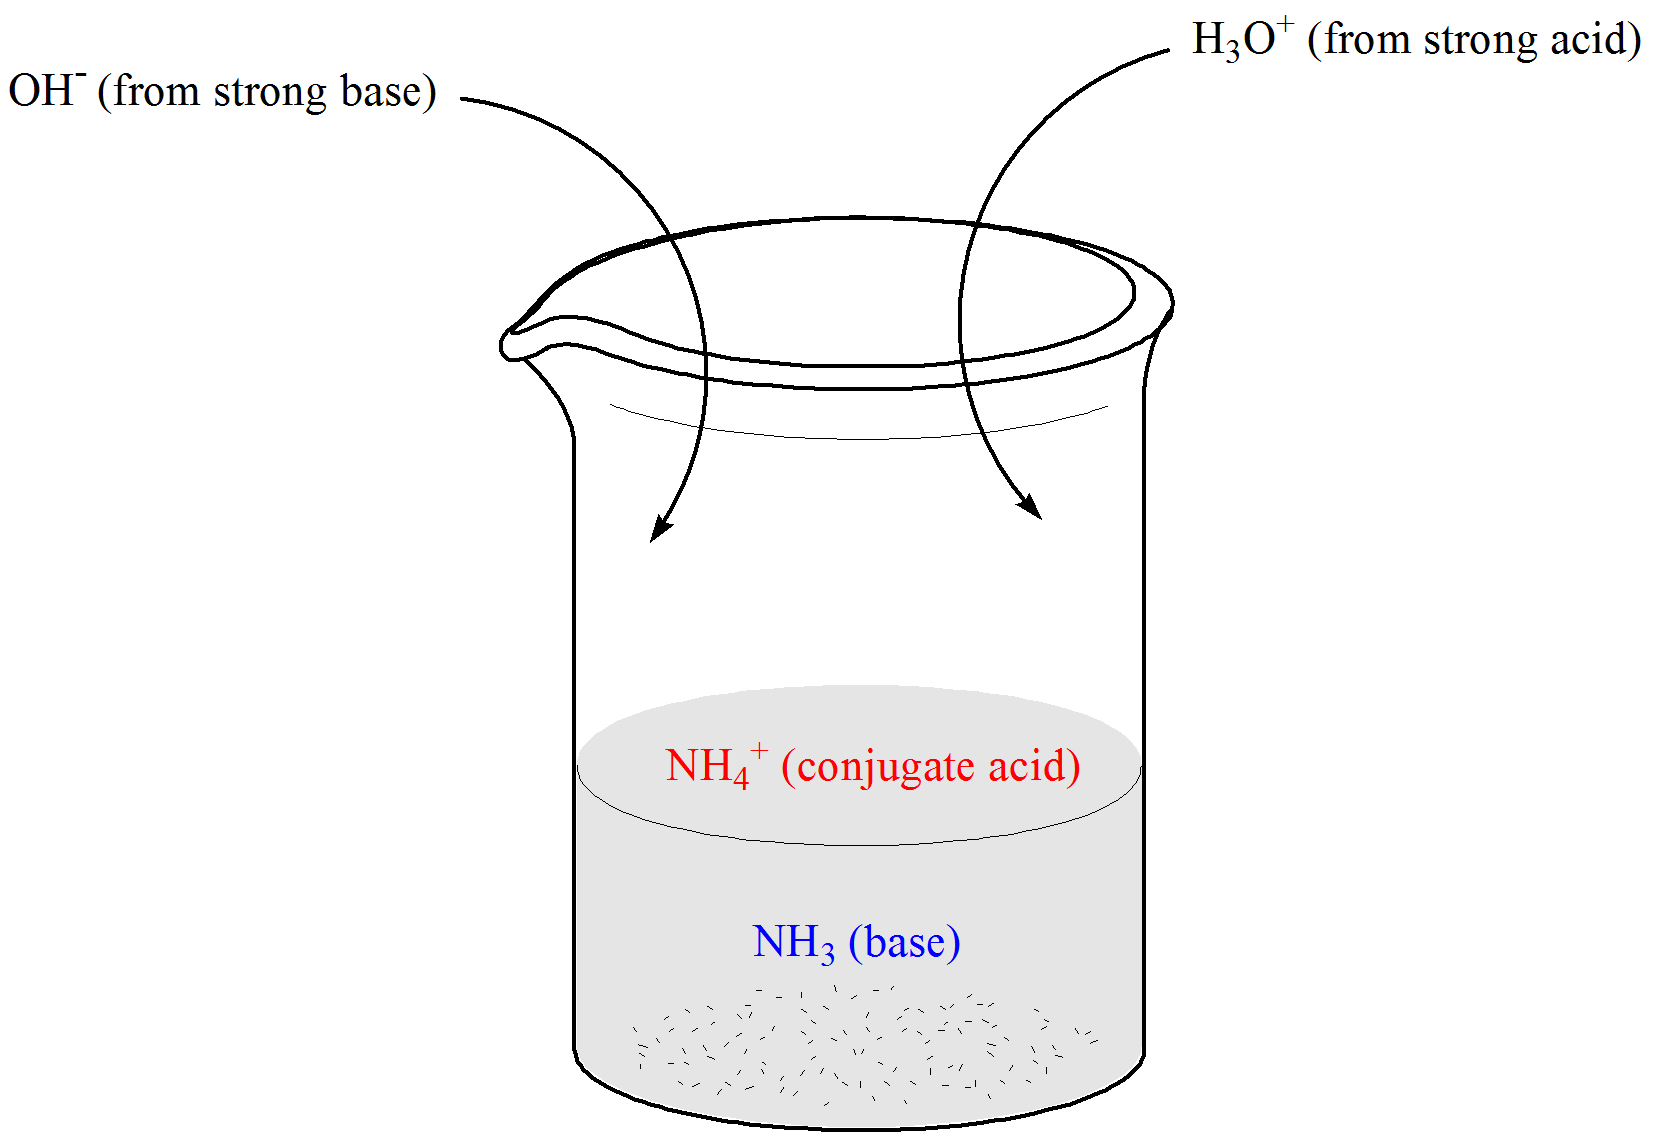 Illustration of beaker containing weak base NH3 and its conjugate acid, ammonium ion